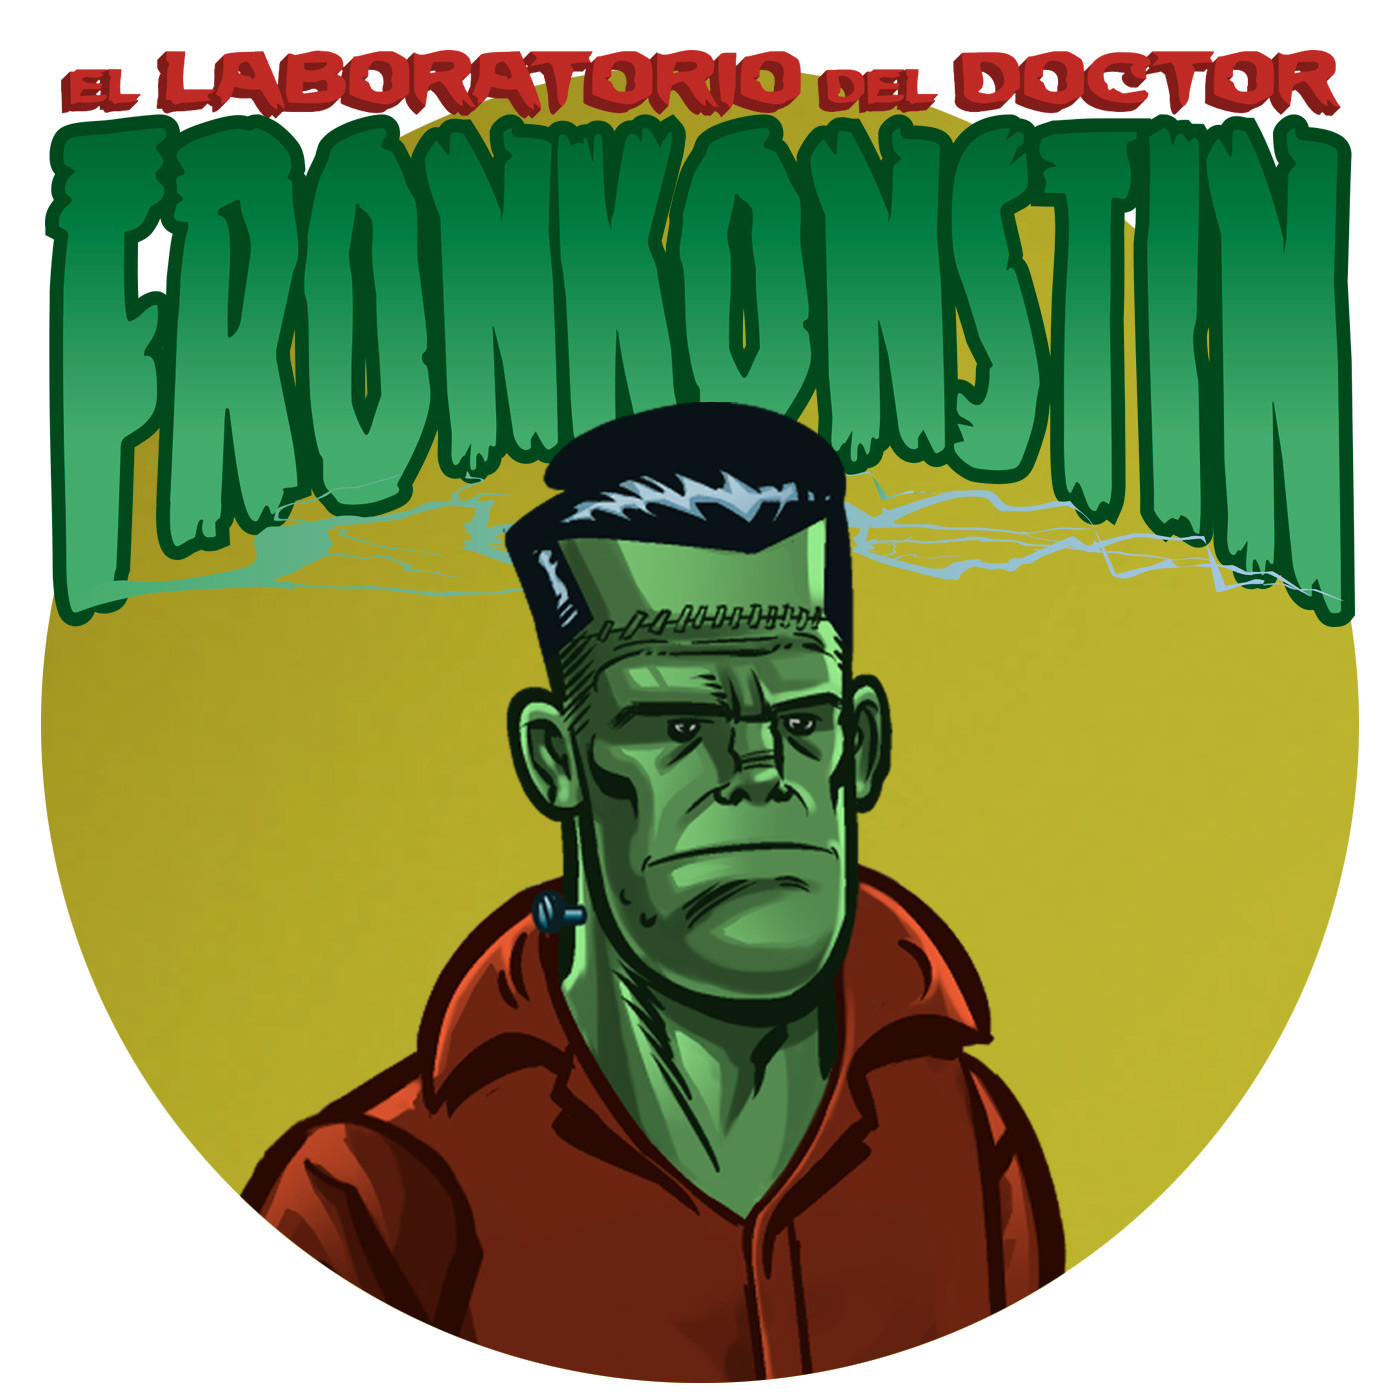 El laboratorio del doctor Fronkonstin